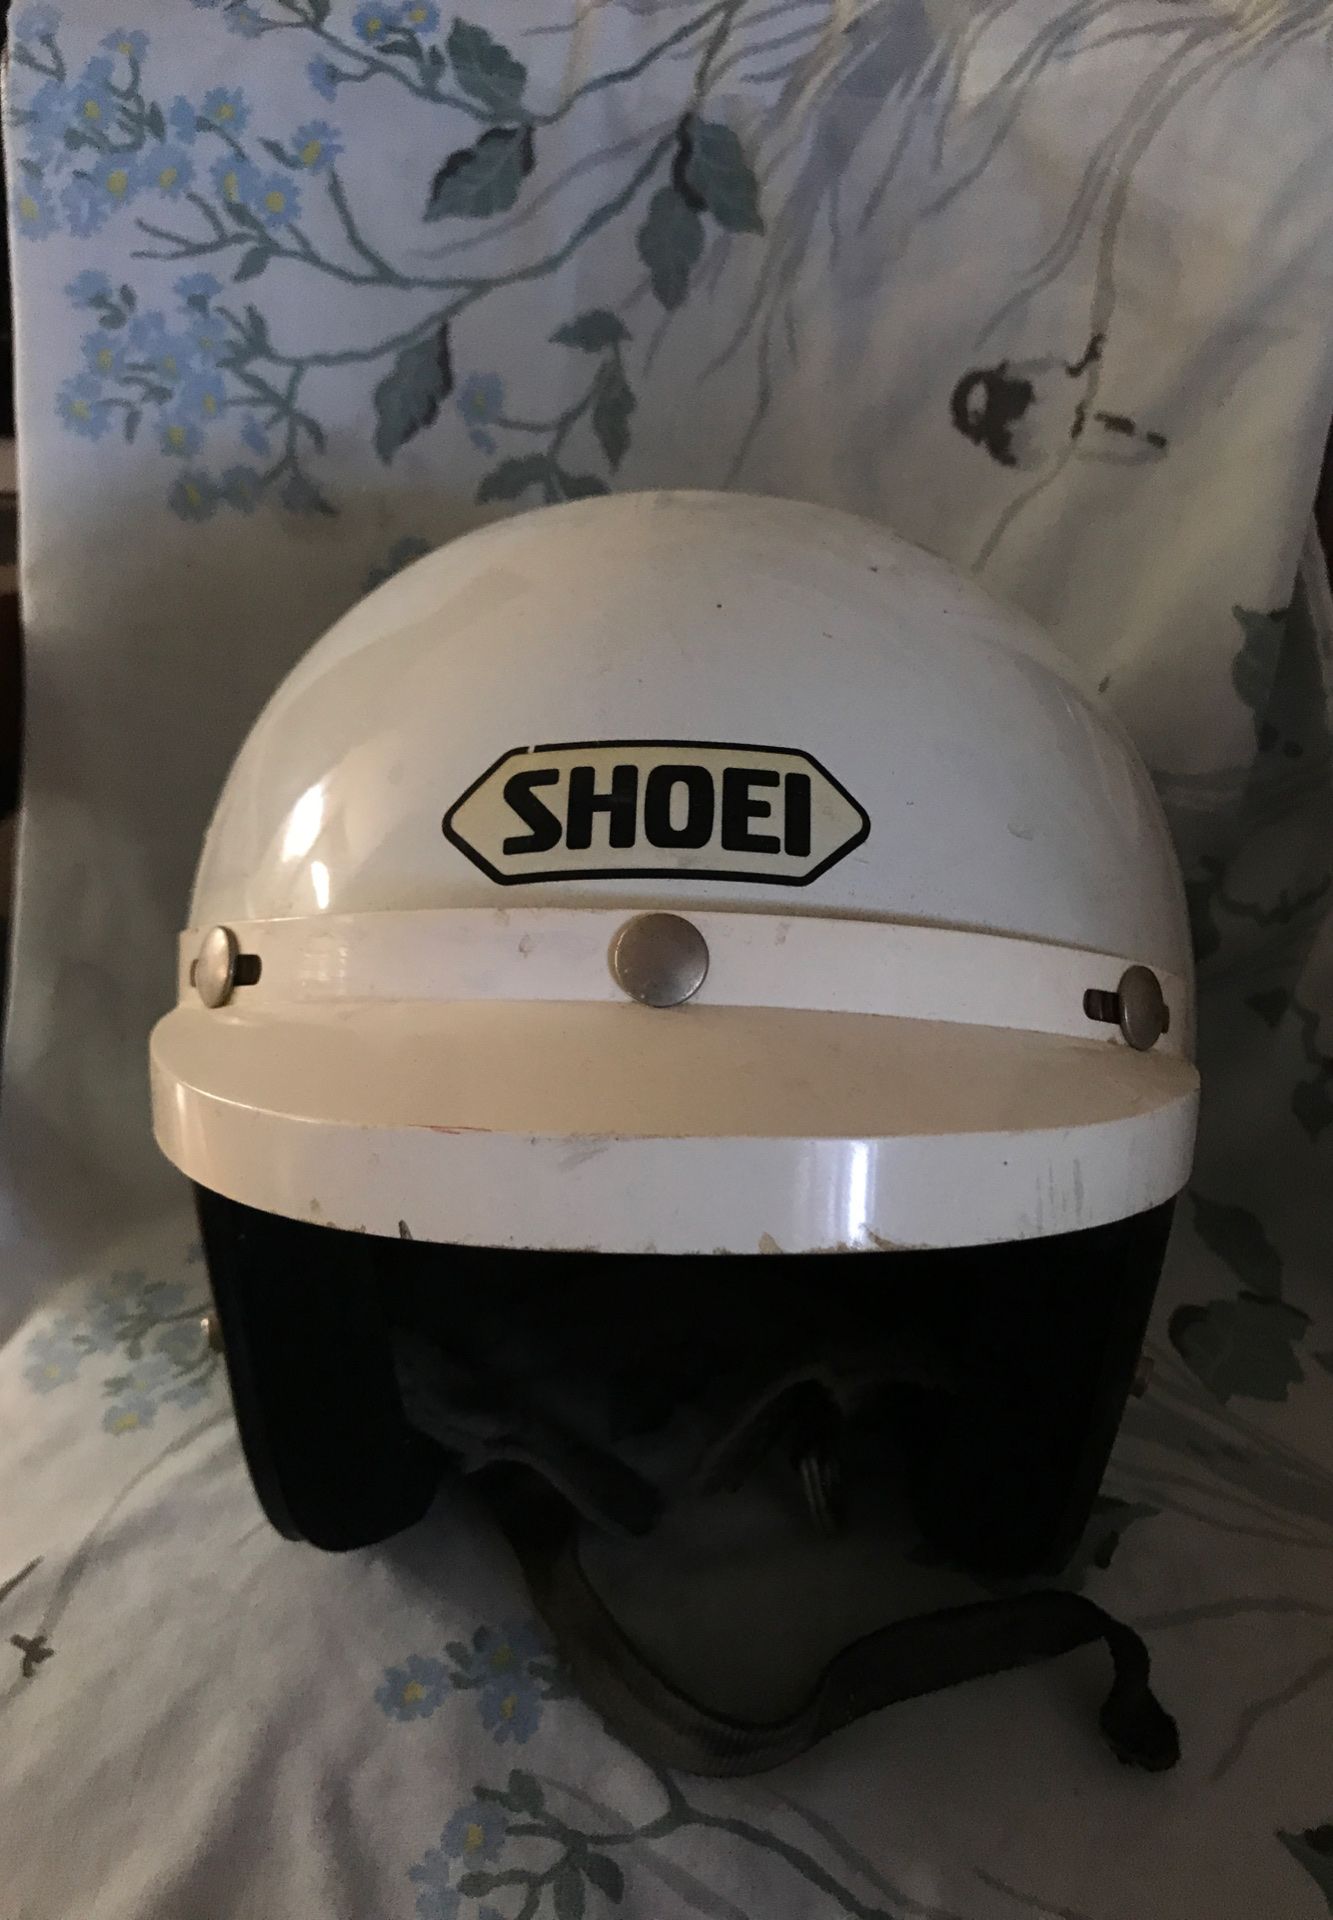 Retro motorcycle helmet “Shoei Brand”